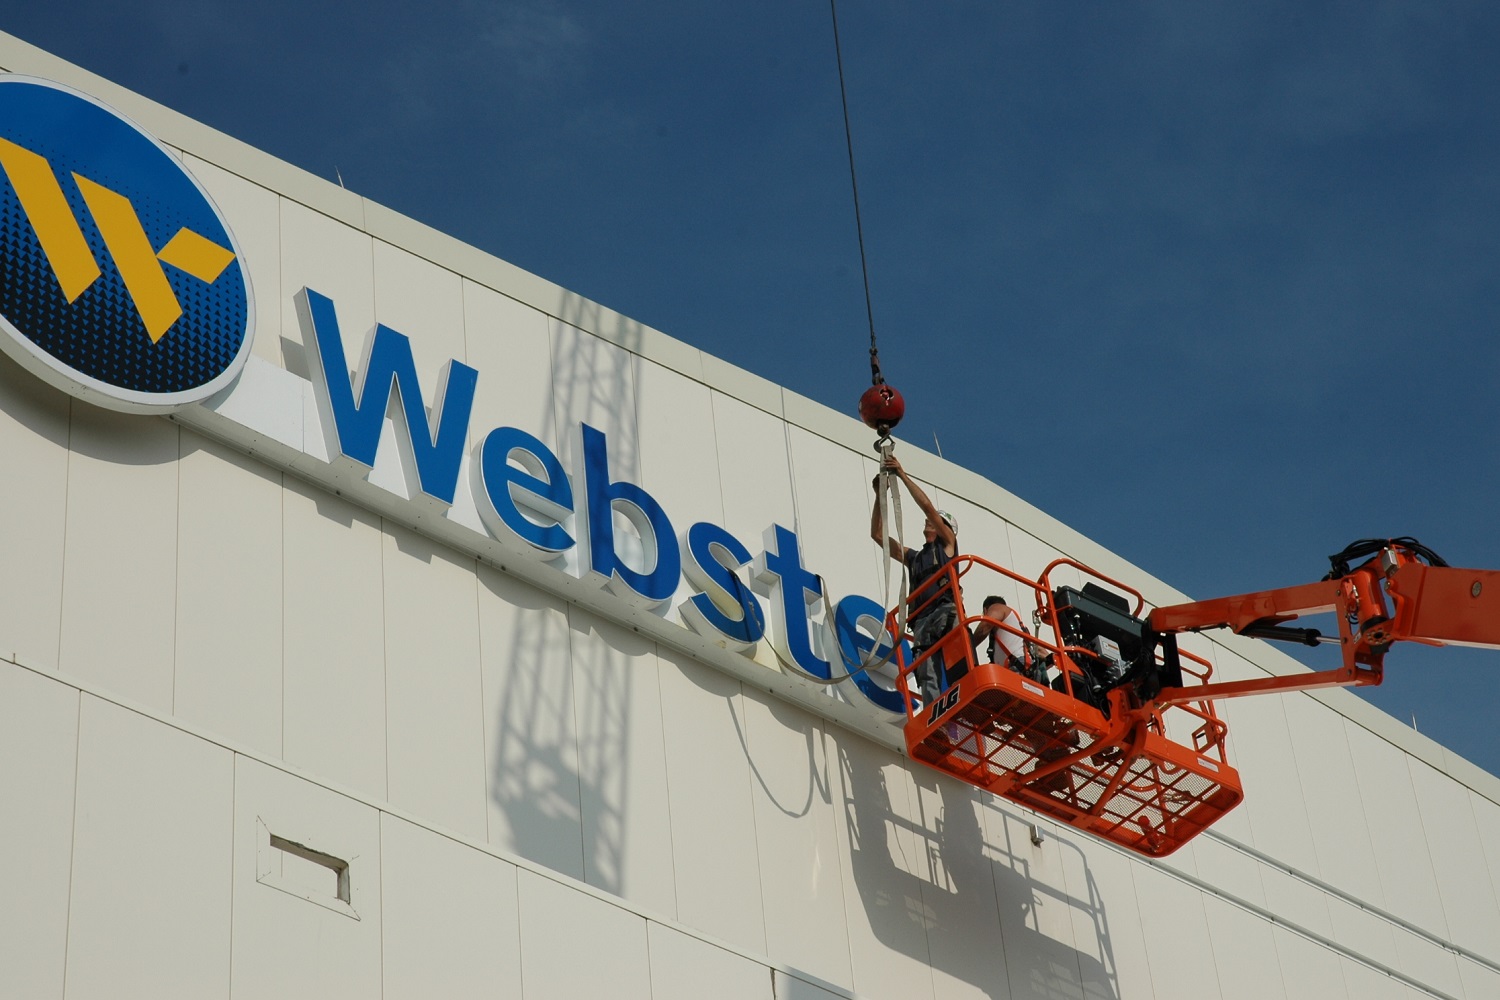 Webster sign installation